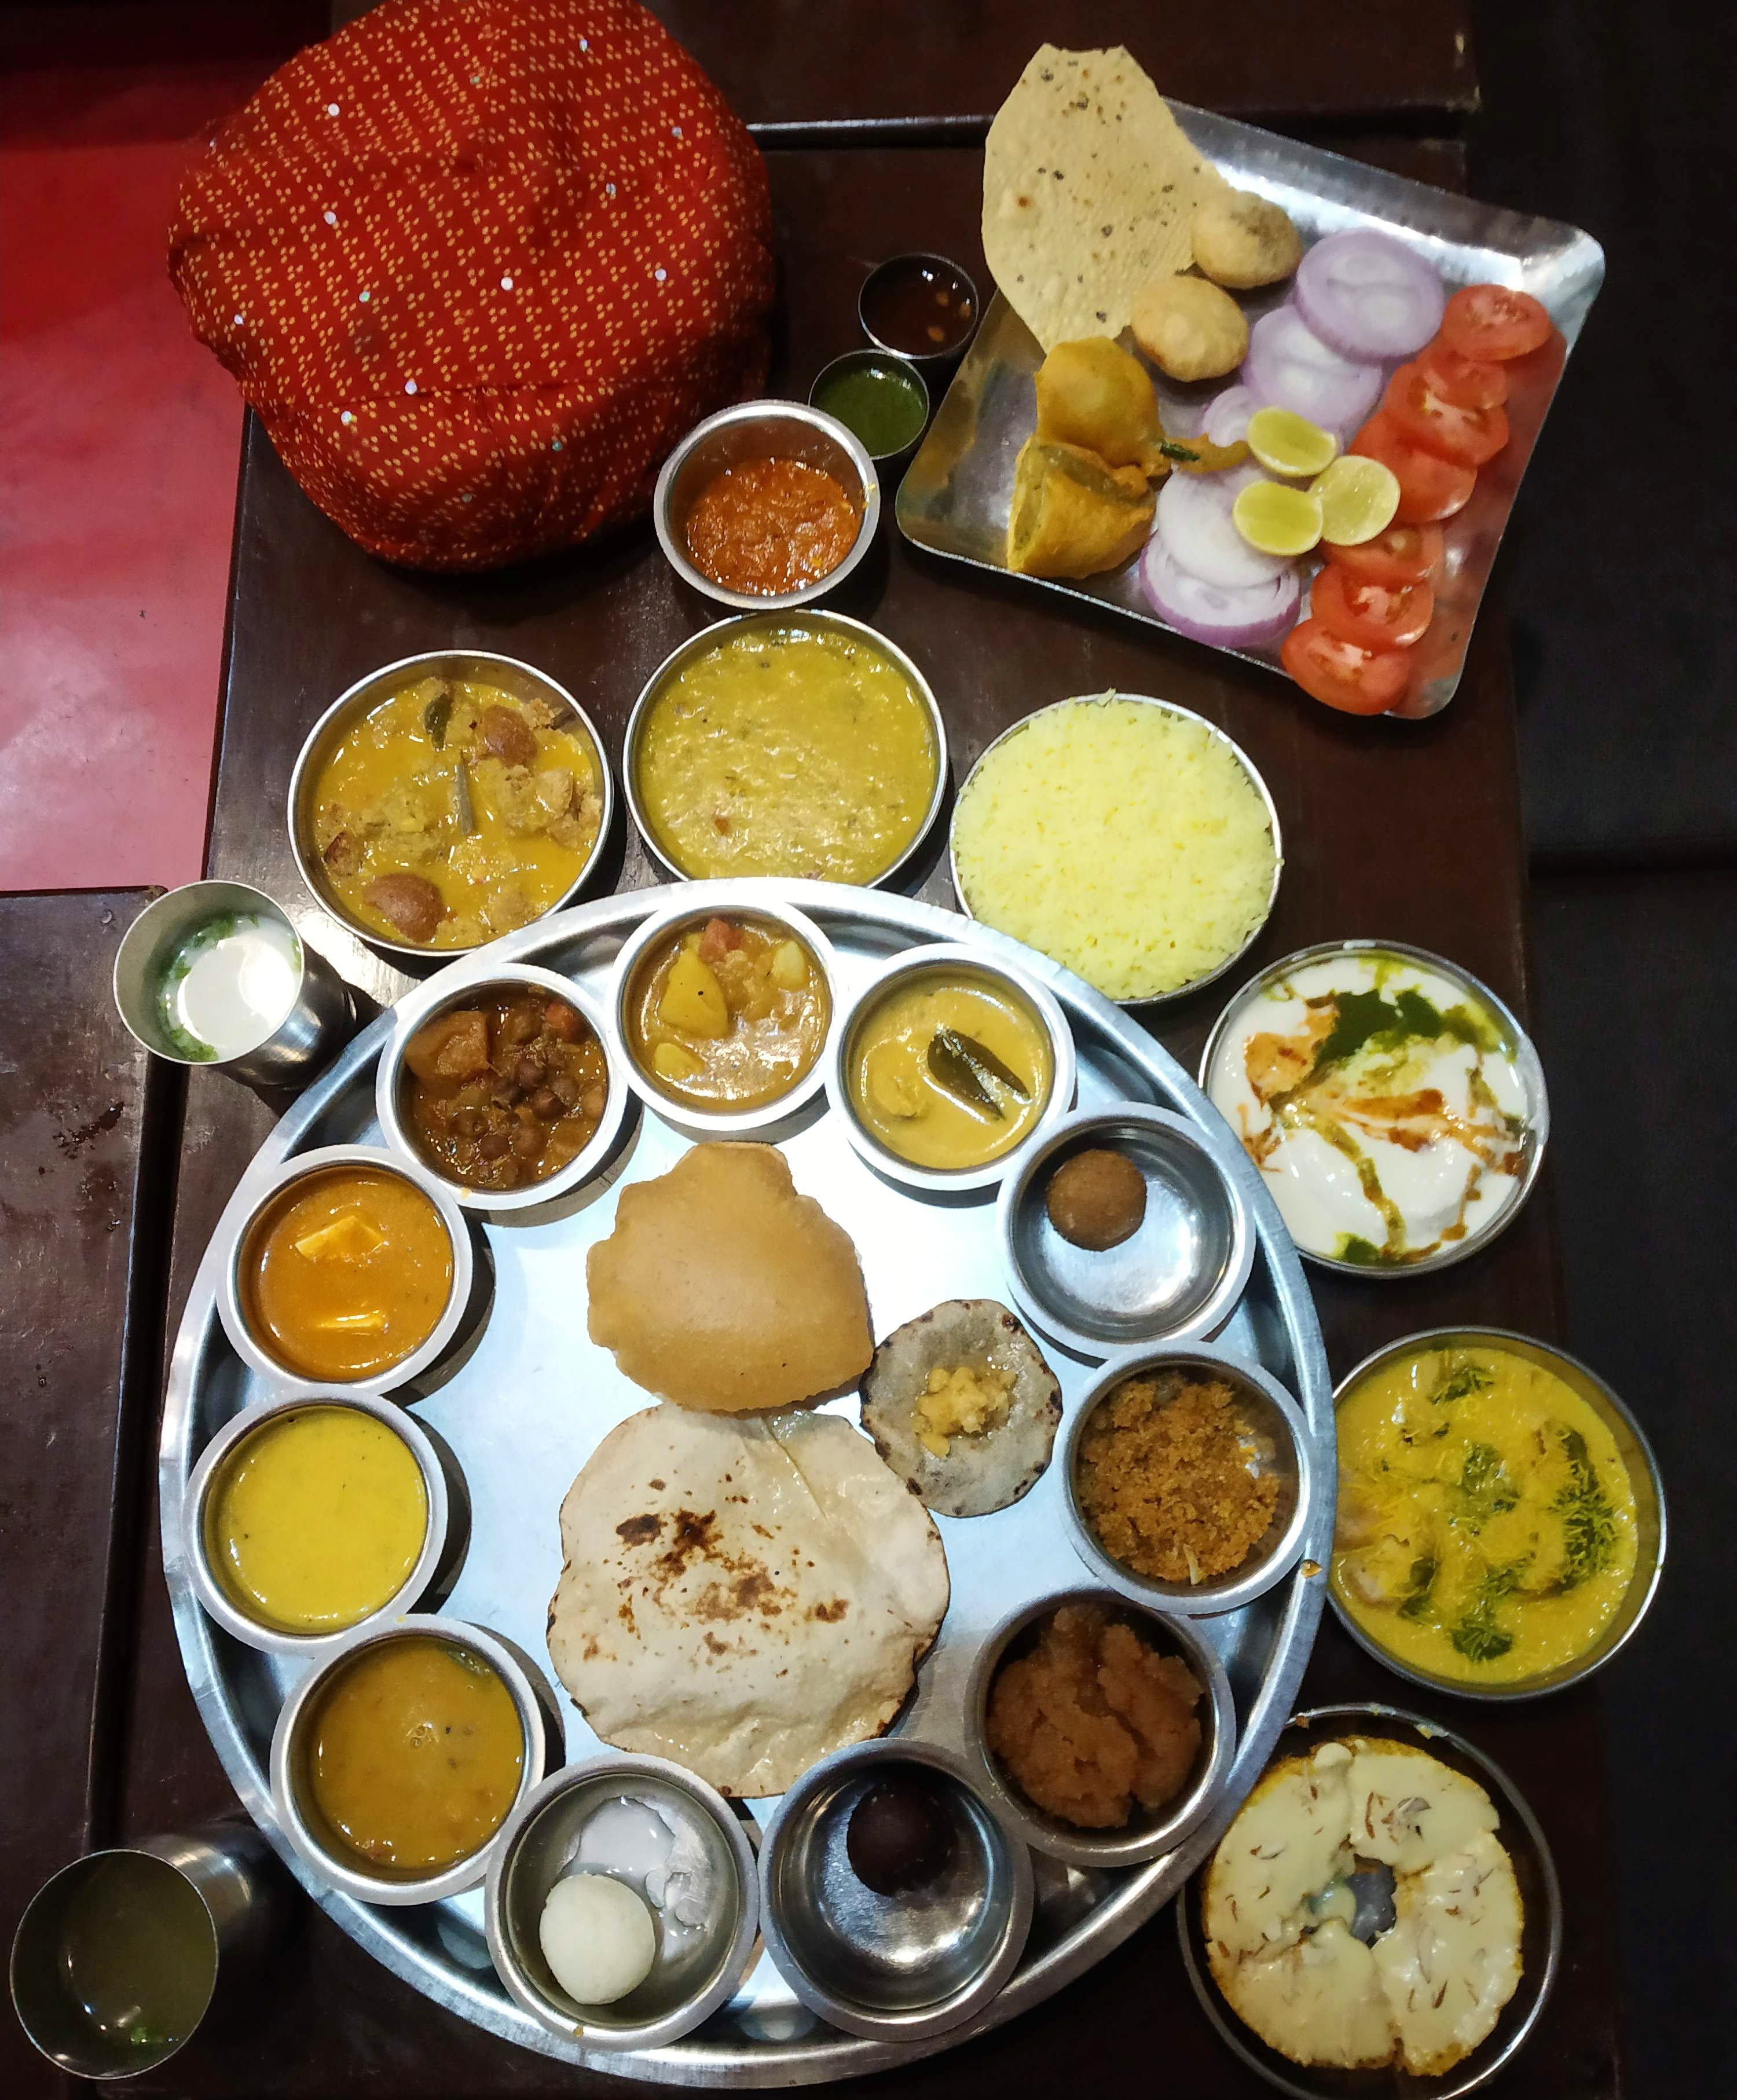 Dish,Food,Cuisine,Meal,Ingredient,Brunch,Indian cuisine,Vegetarian food,Rajasthani cuisine,Breakfast